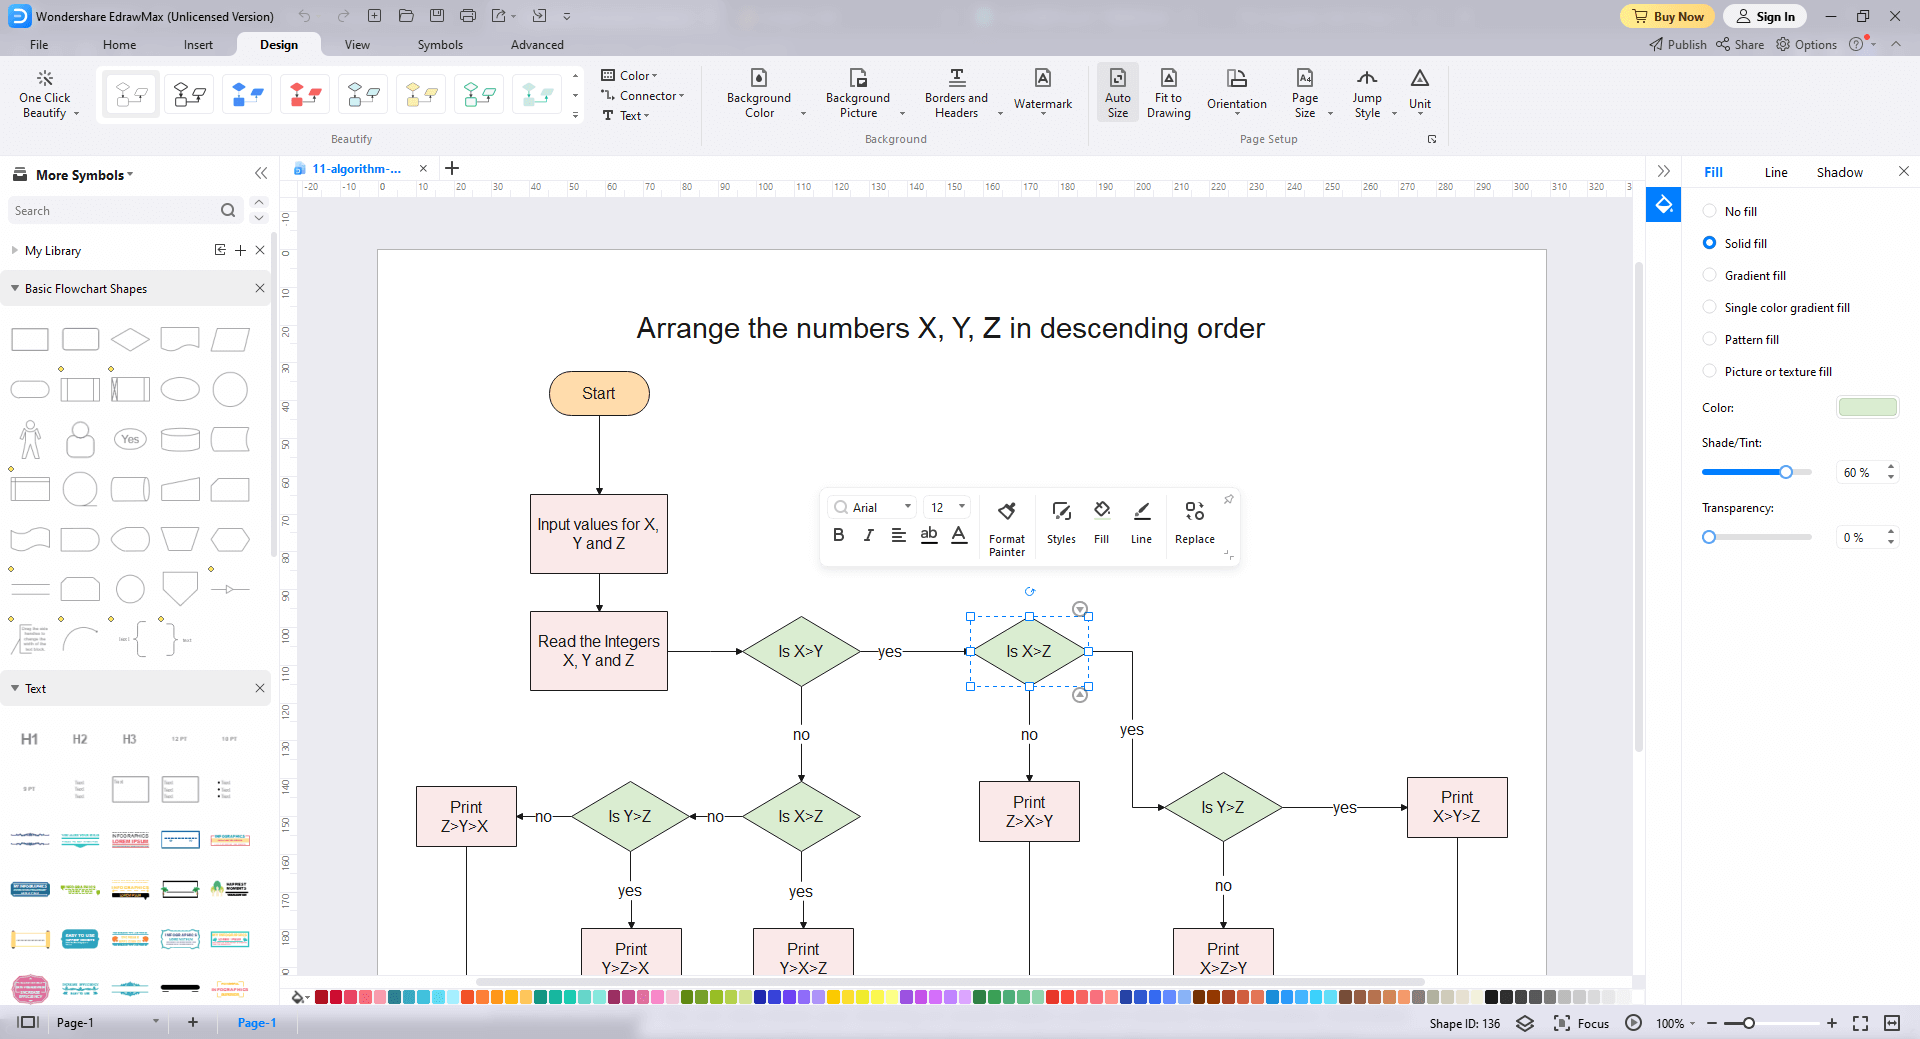 Wie man Algorithmus-Flussdiagramm-Vorlagen verwendet